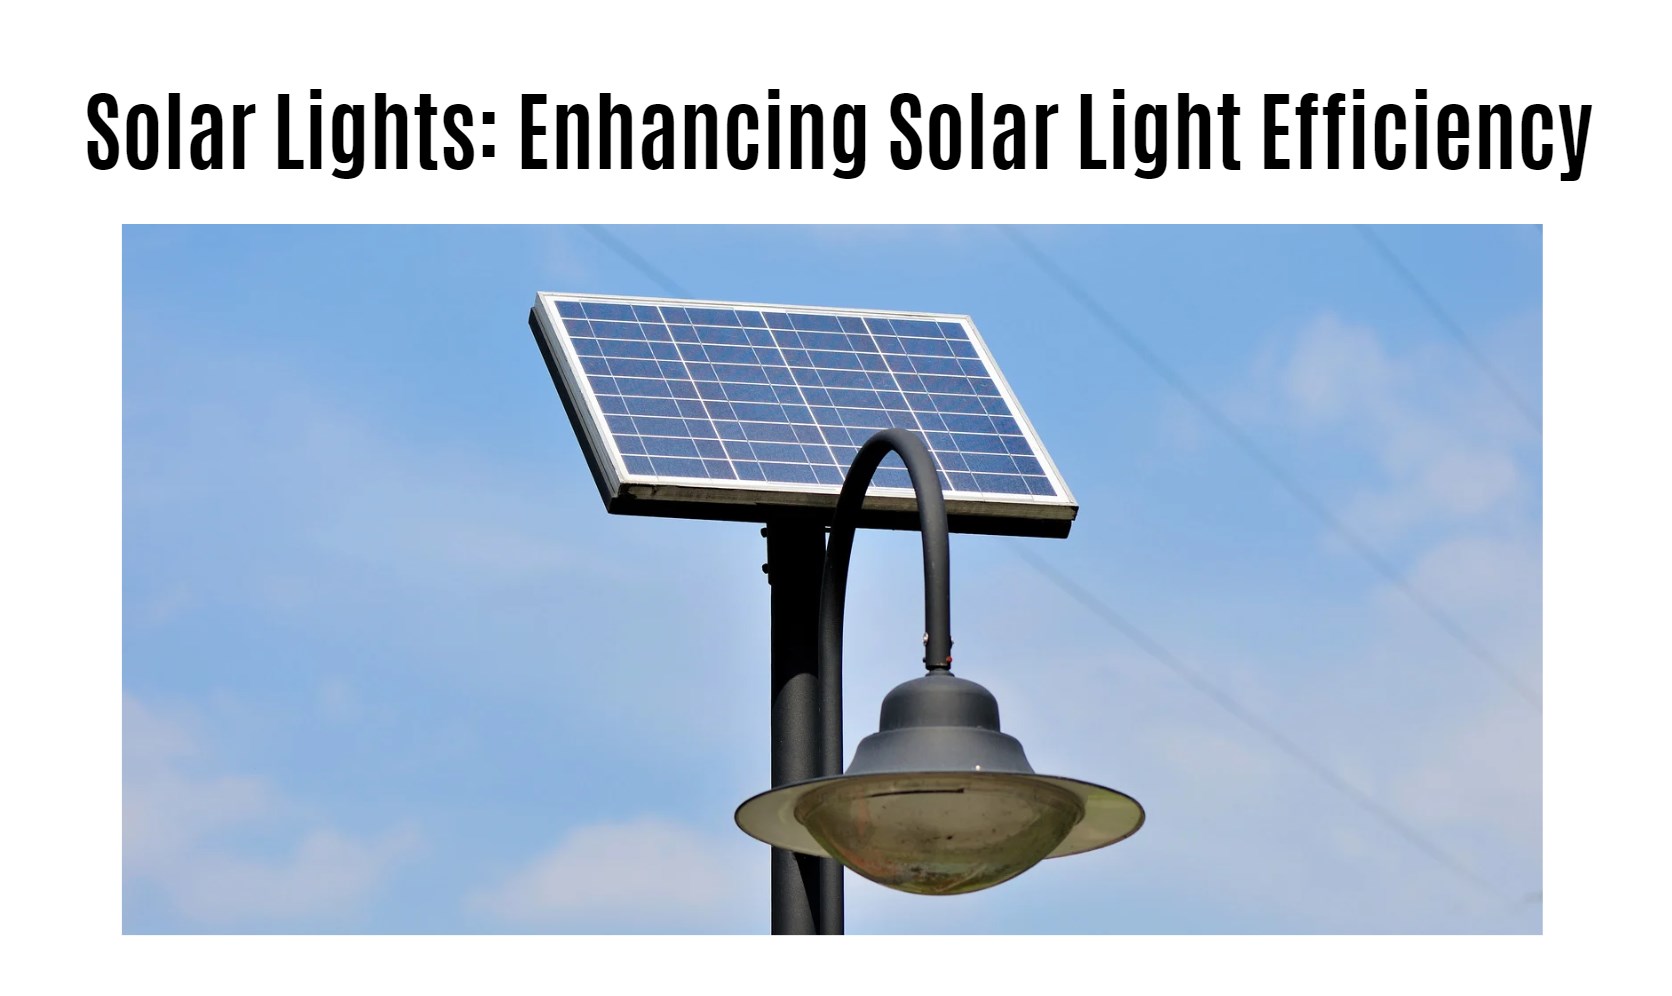 Enhancing Solar Light Efficiency